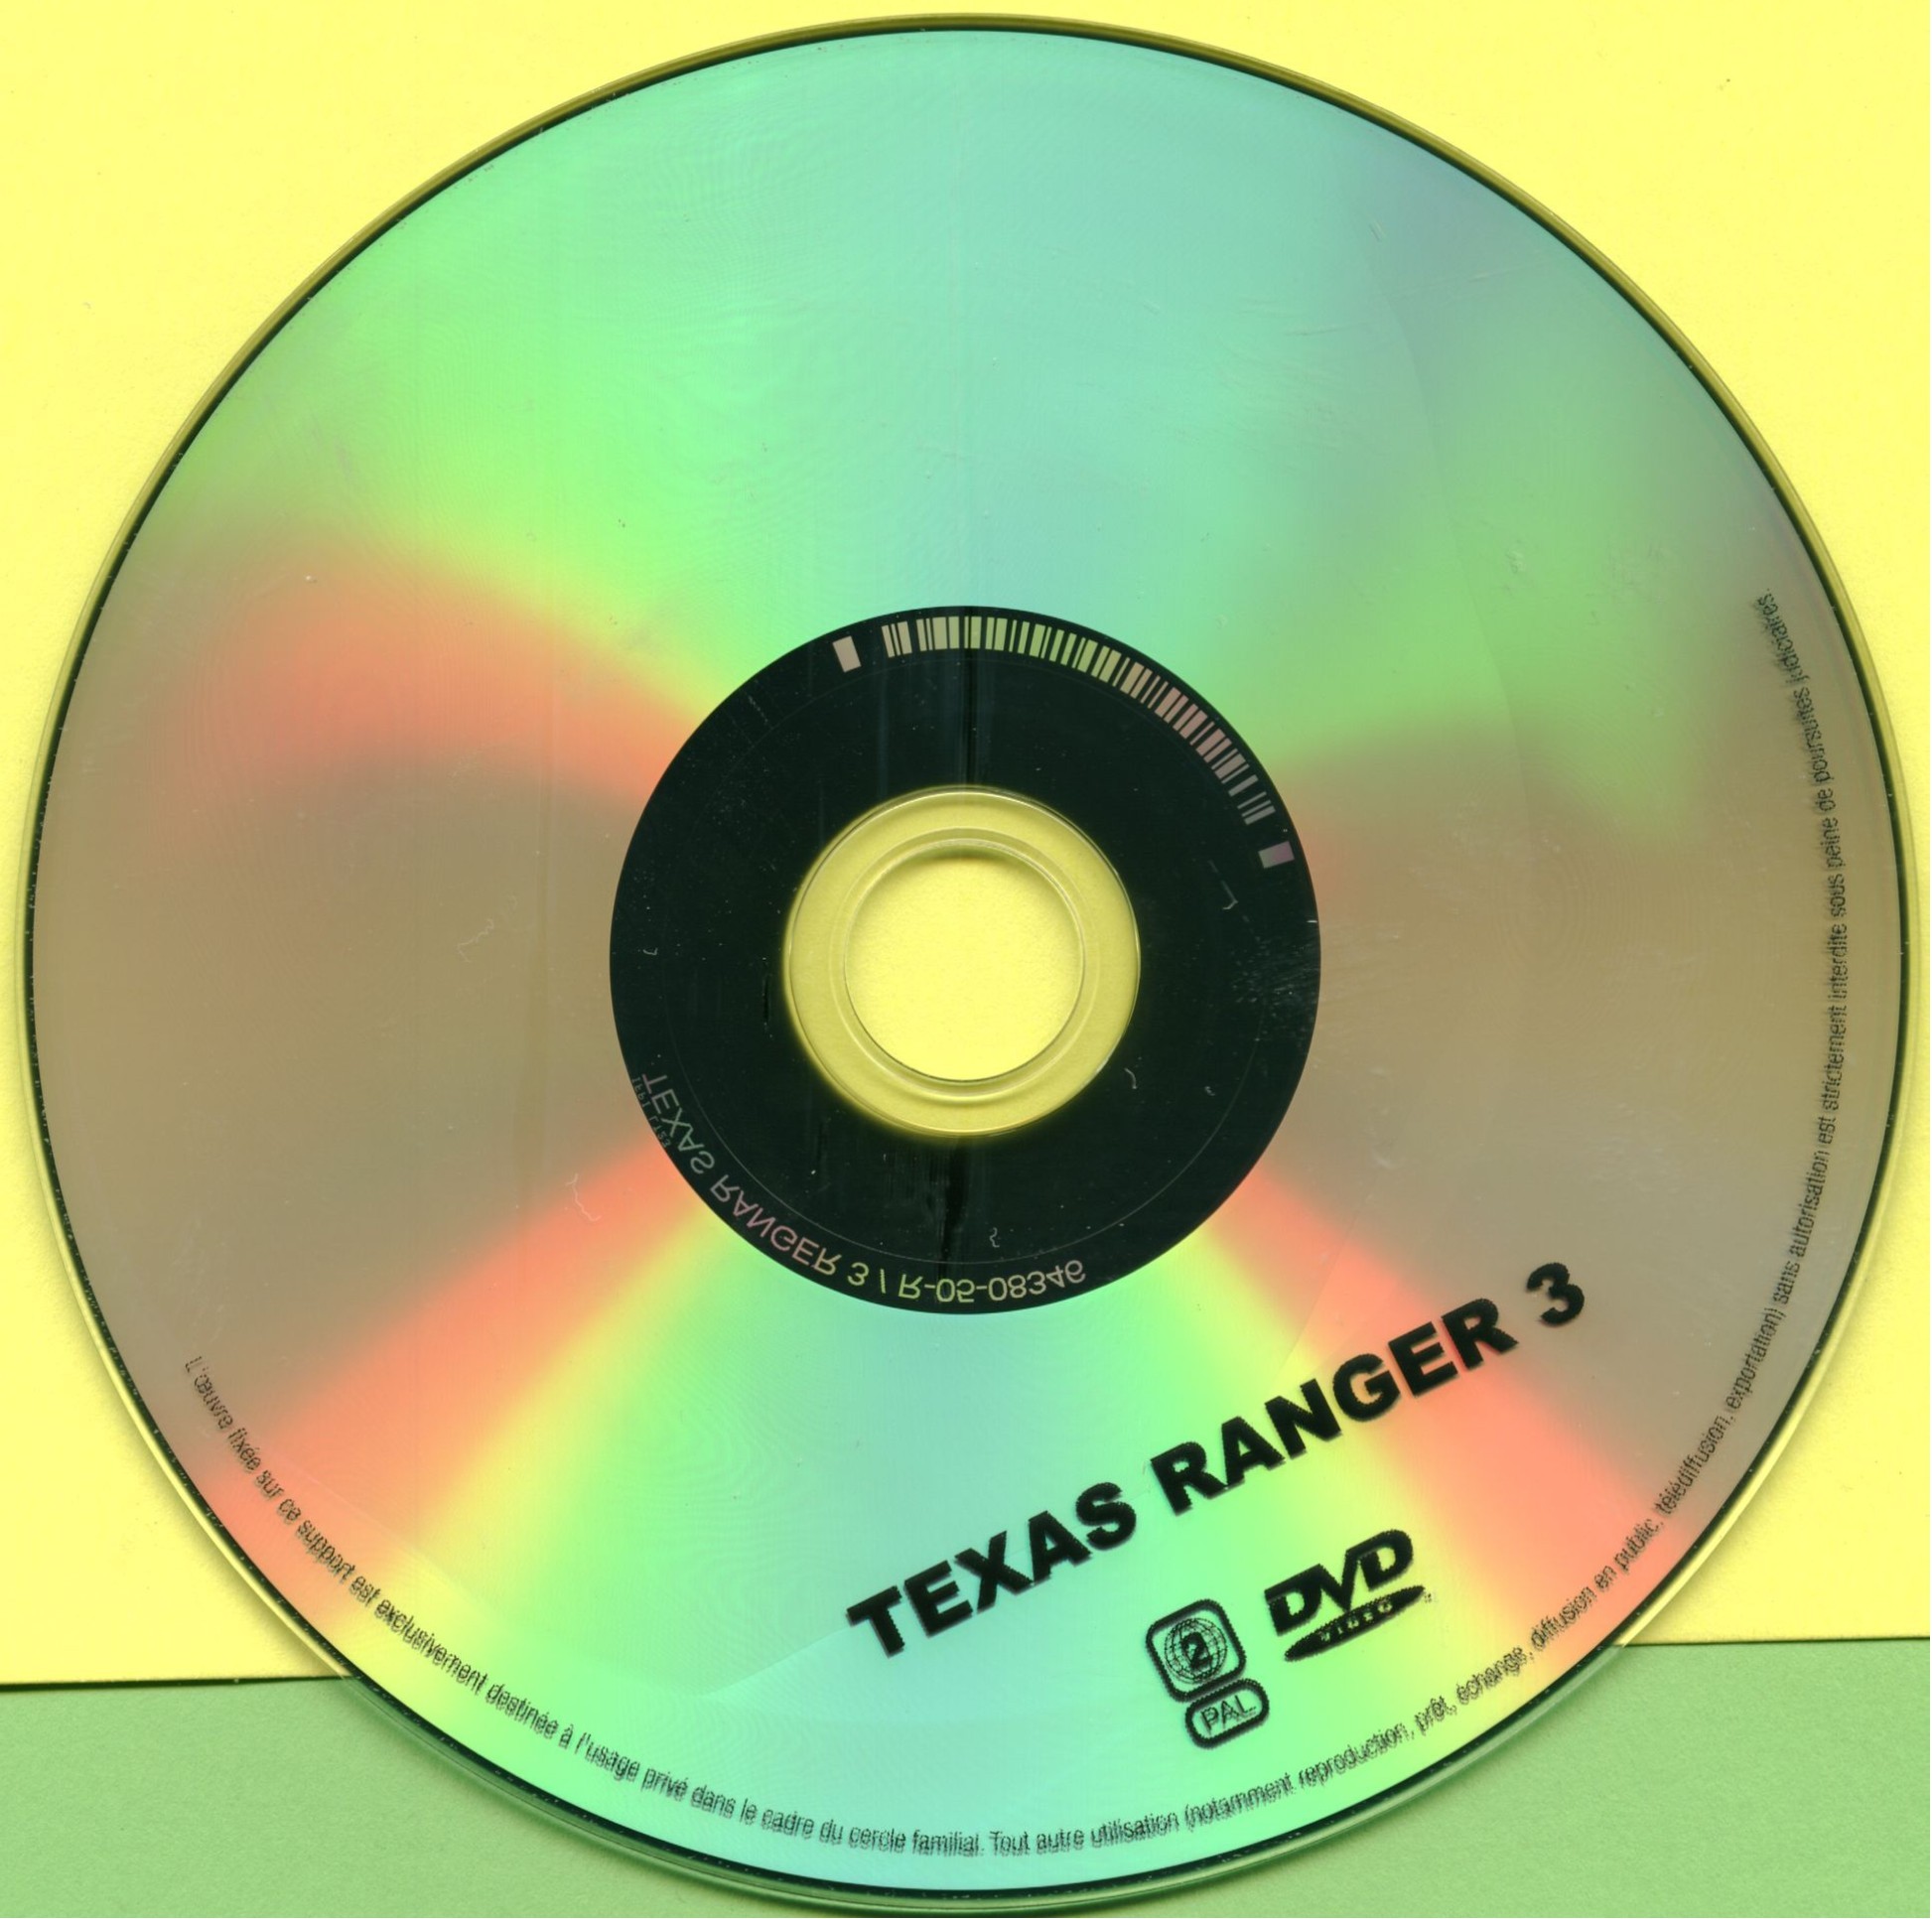 Texas ranger 3